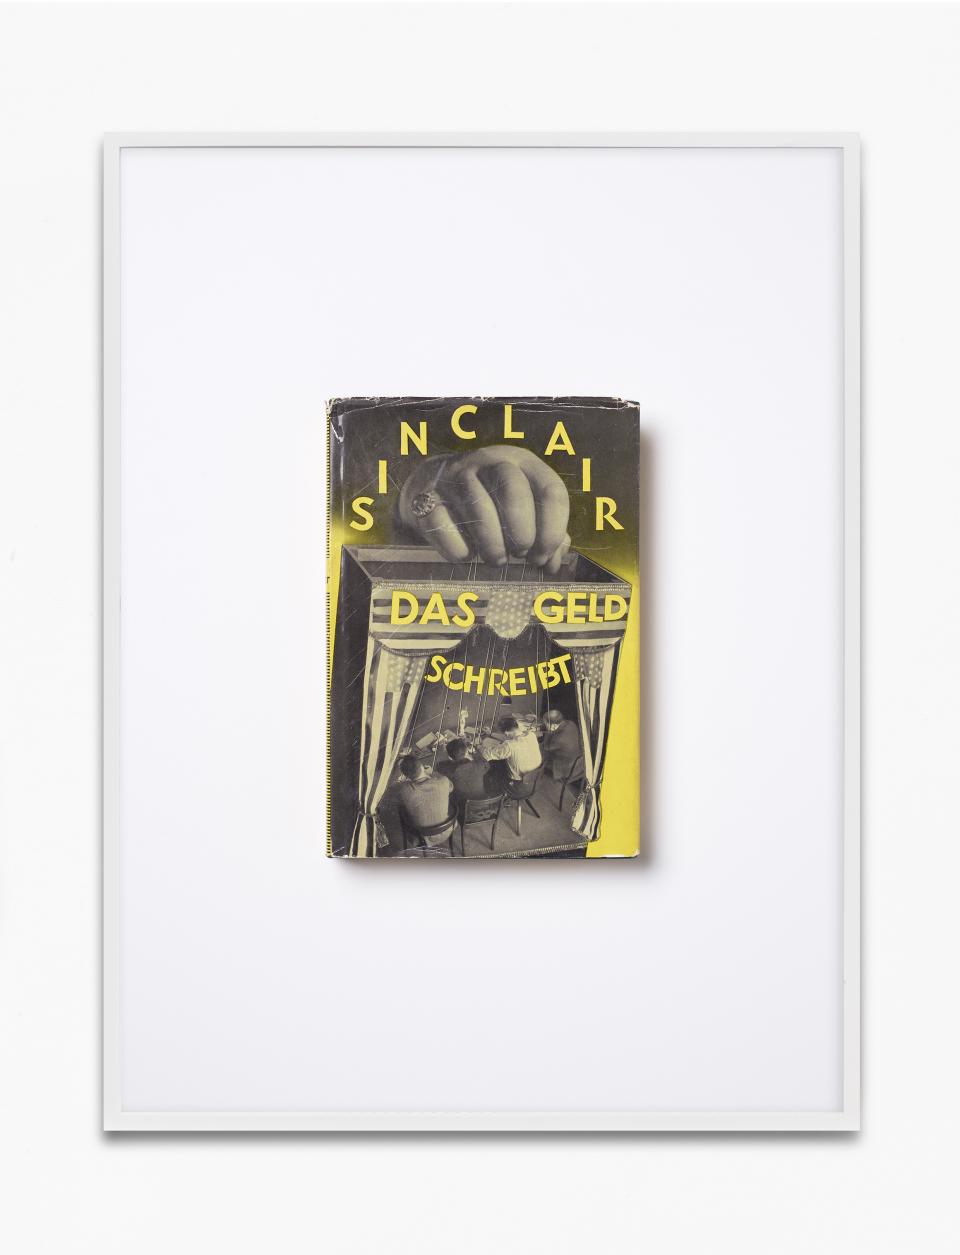 Buchcover von «Das Geld schreibt» von Sinclair in einem Bilderrahmen